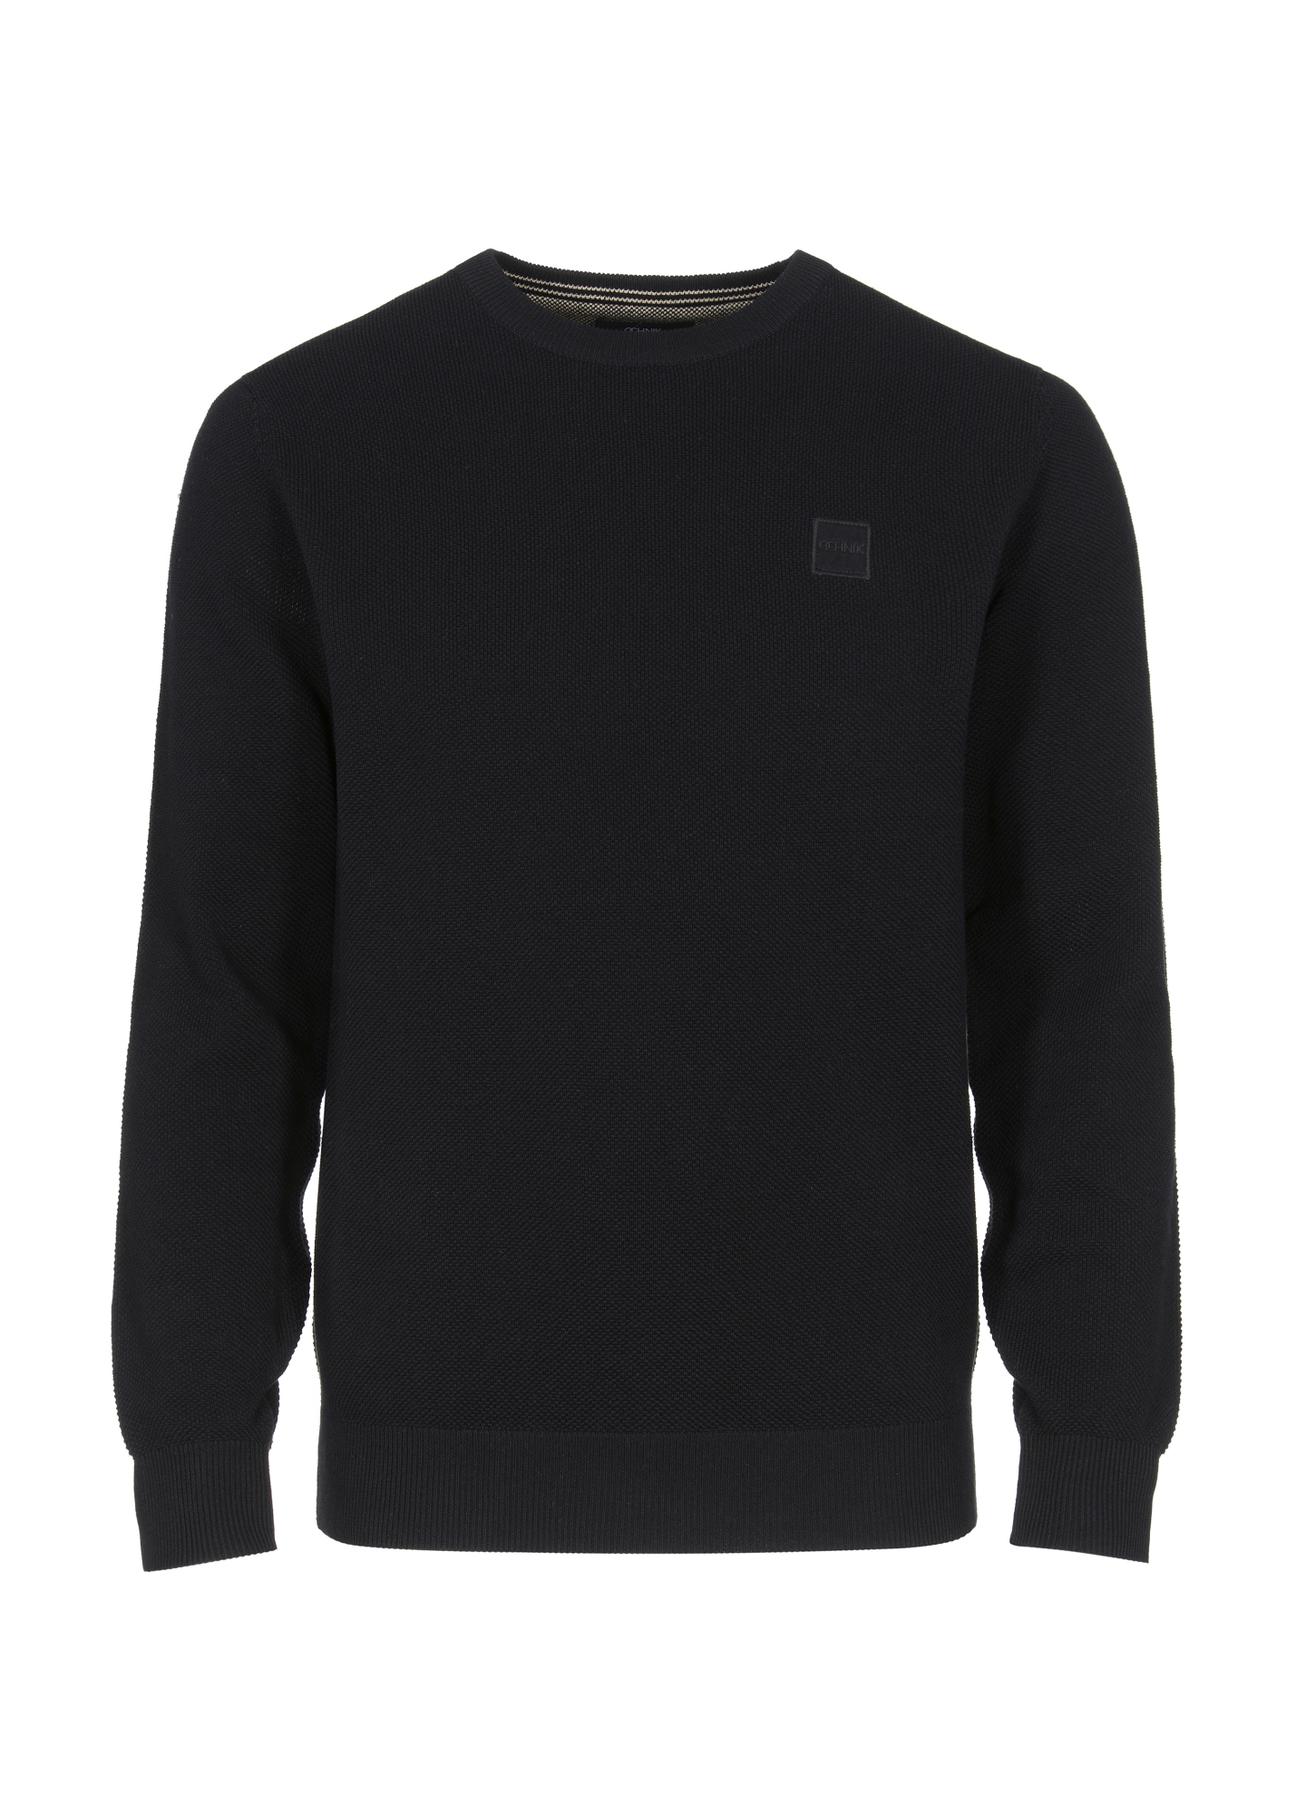 Czarny bawełniany sweter męski z logo SWEMT-0135-99(Z23)